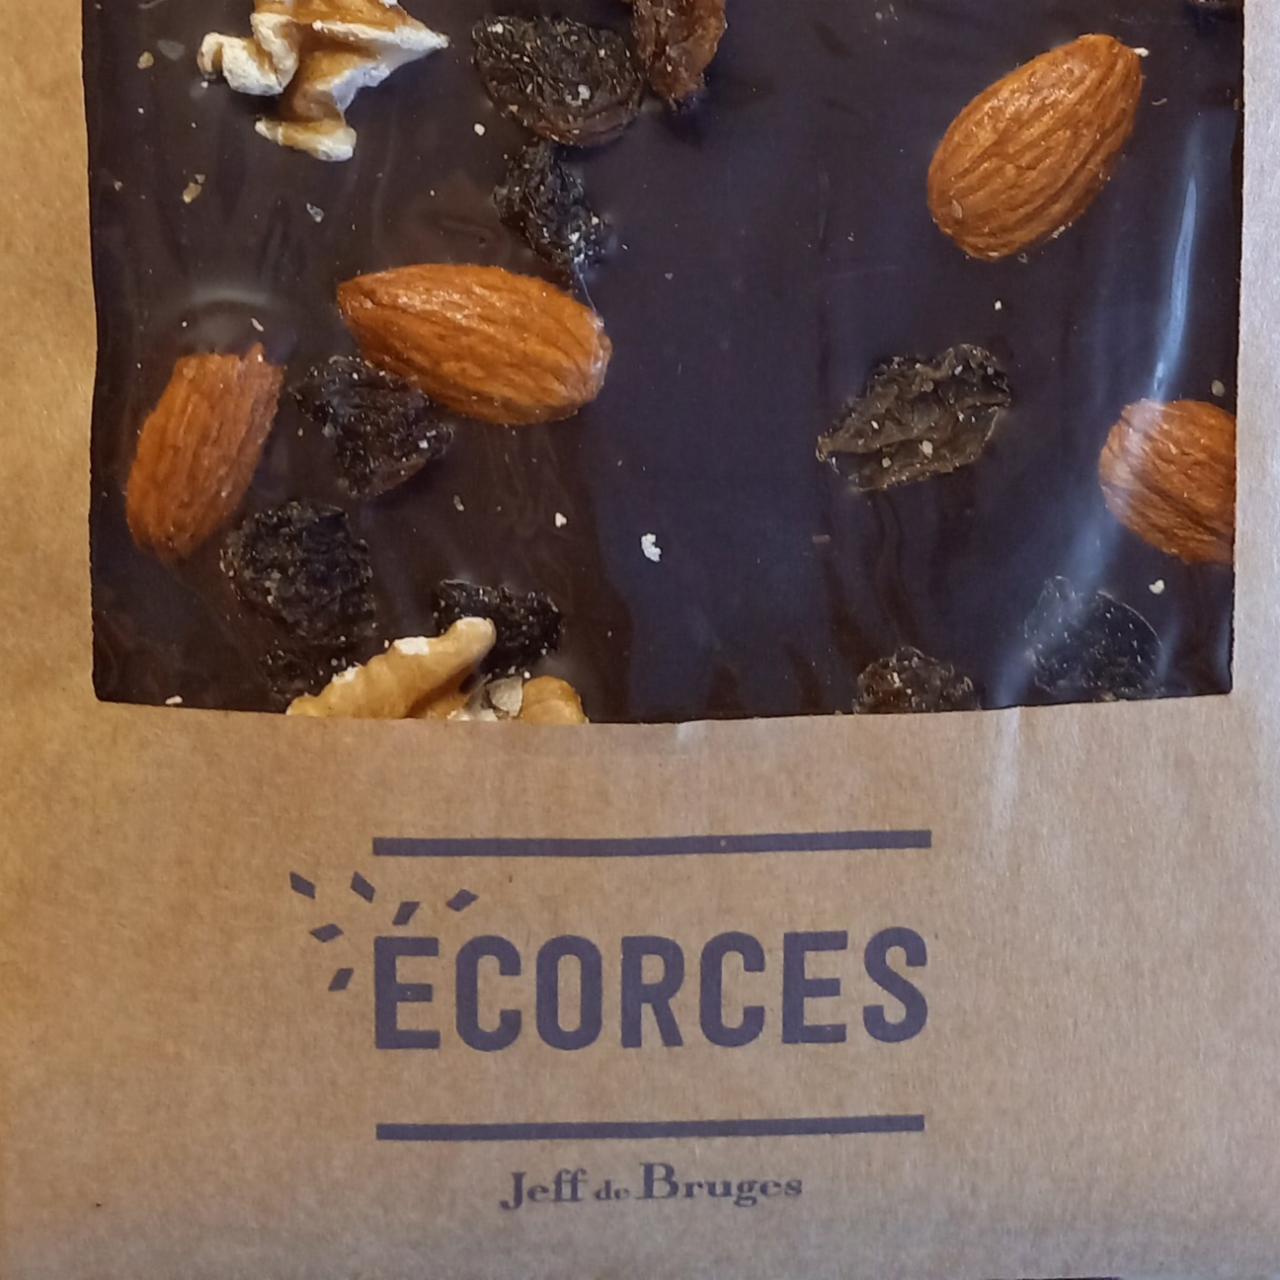 Fotografie - Ecorces hořká čokoláda Jeff de Bruges